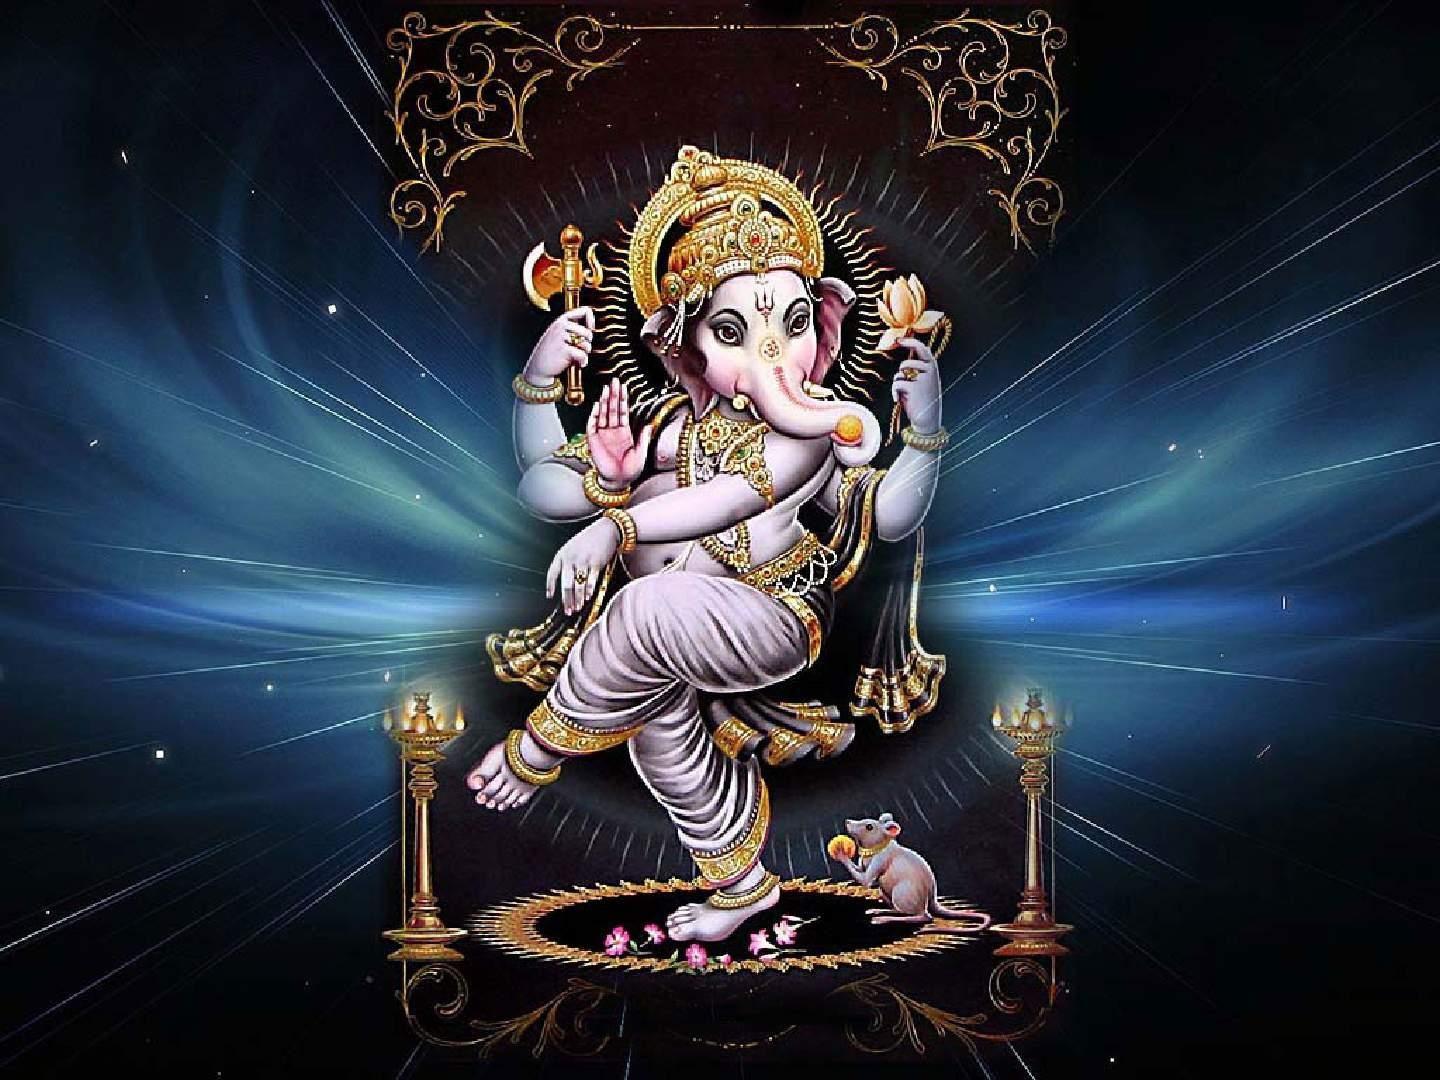 Lord Ganesha 3D Photos  Lord Ganesha 3D Images Lord Vinayagar 3D  Wallpapers HD  Lord Ganesha Animation 3D Art  Gods Own Web